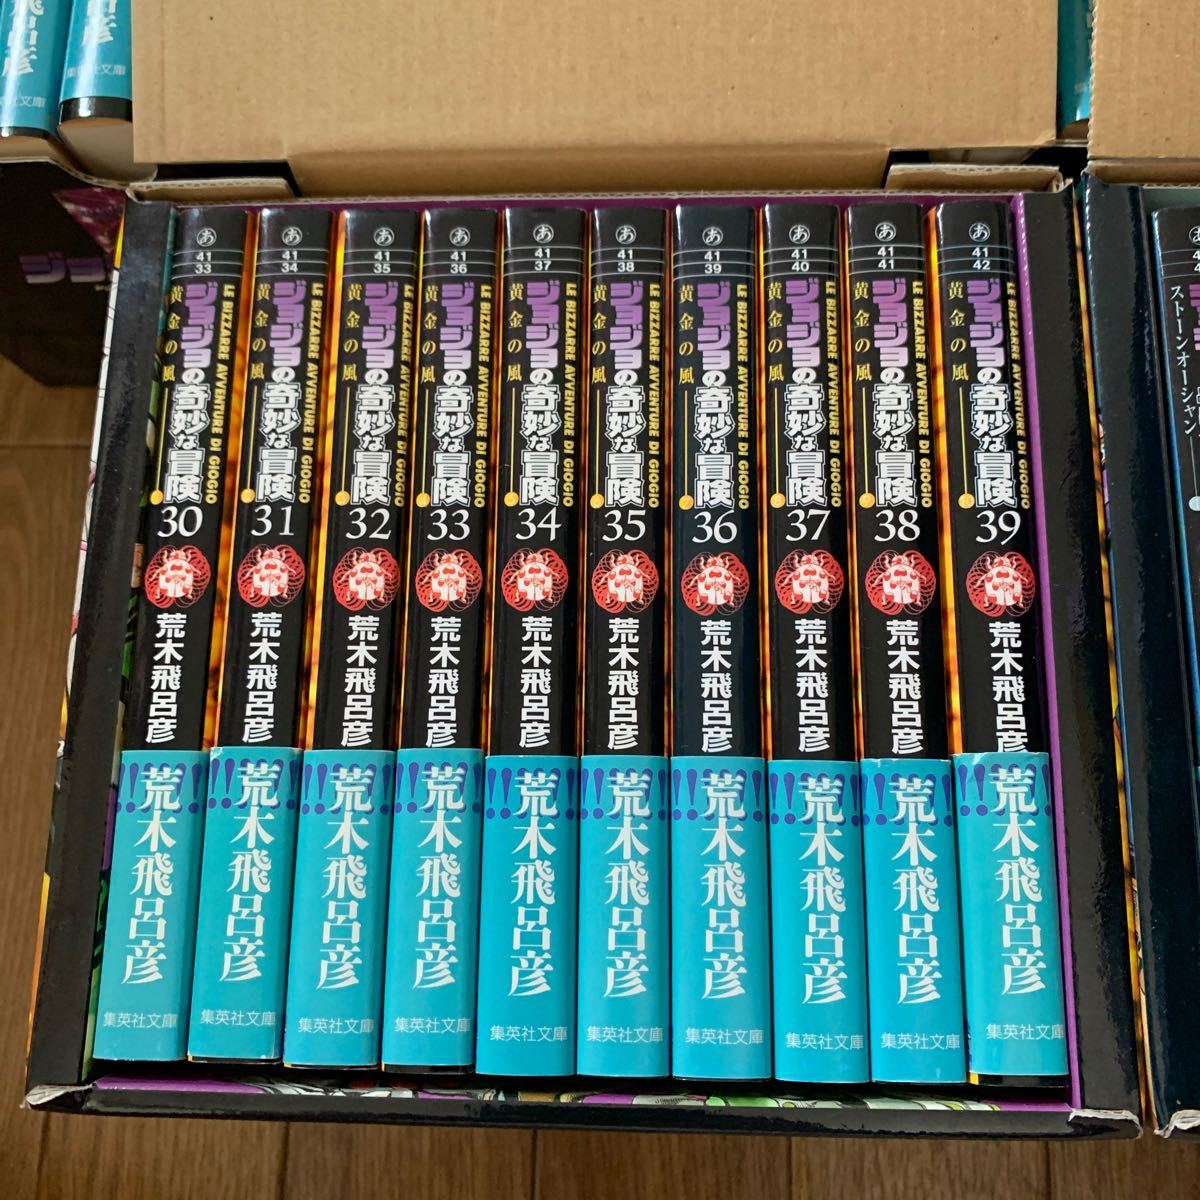 ジョジョの奇妙な冒険 文庫版 第1部〜第6部　全巻セット　各部の収納ボックス、ポストカード付き